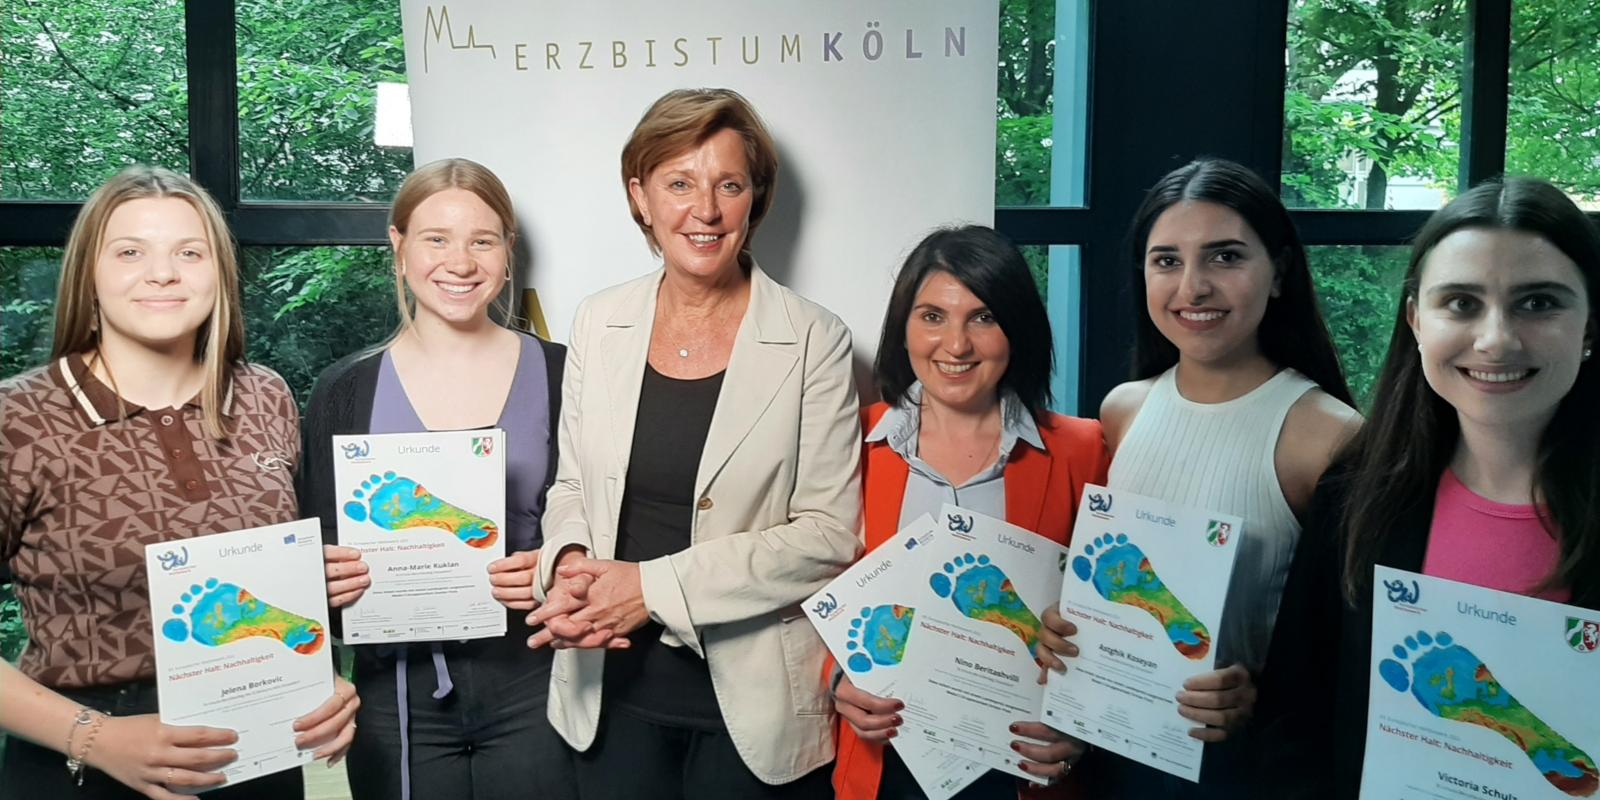 Yvonne Gebauer, Ministerin für Schule und Bildung des Landes Nordrhein-Westfalen, zusammen mit den fünf Gewinnerinnen des St. Ursula-Berufskolleg .